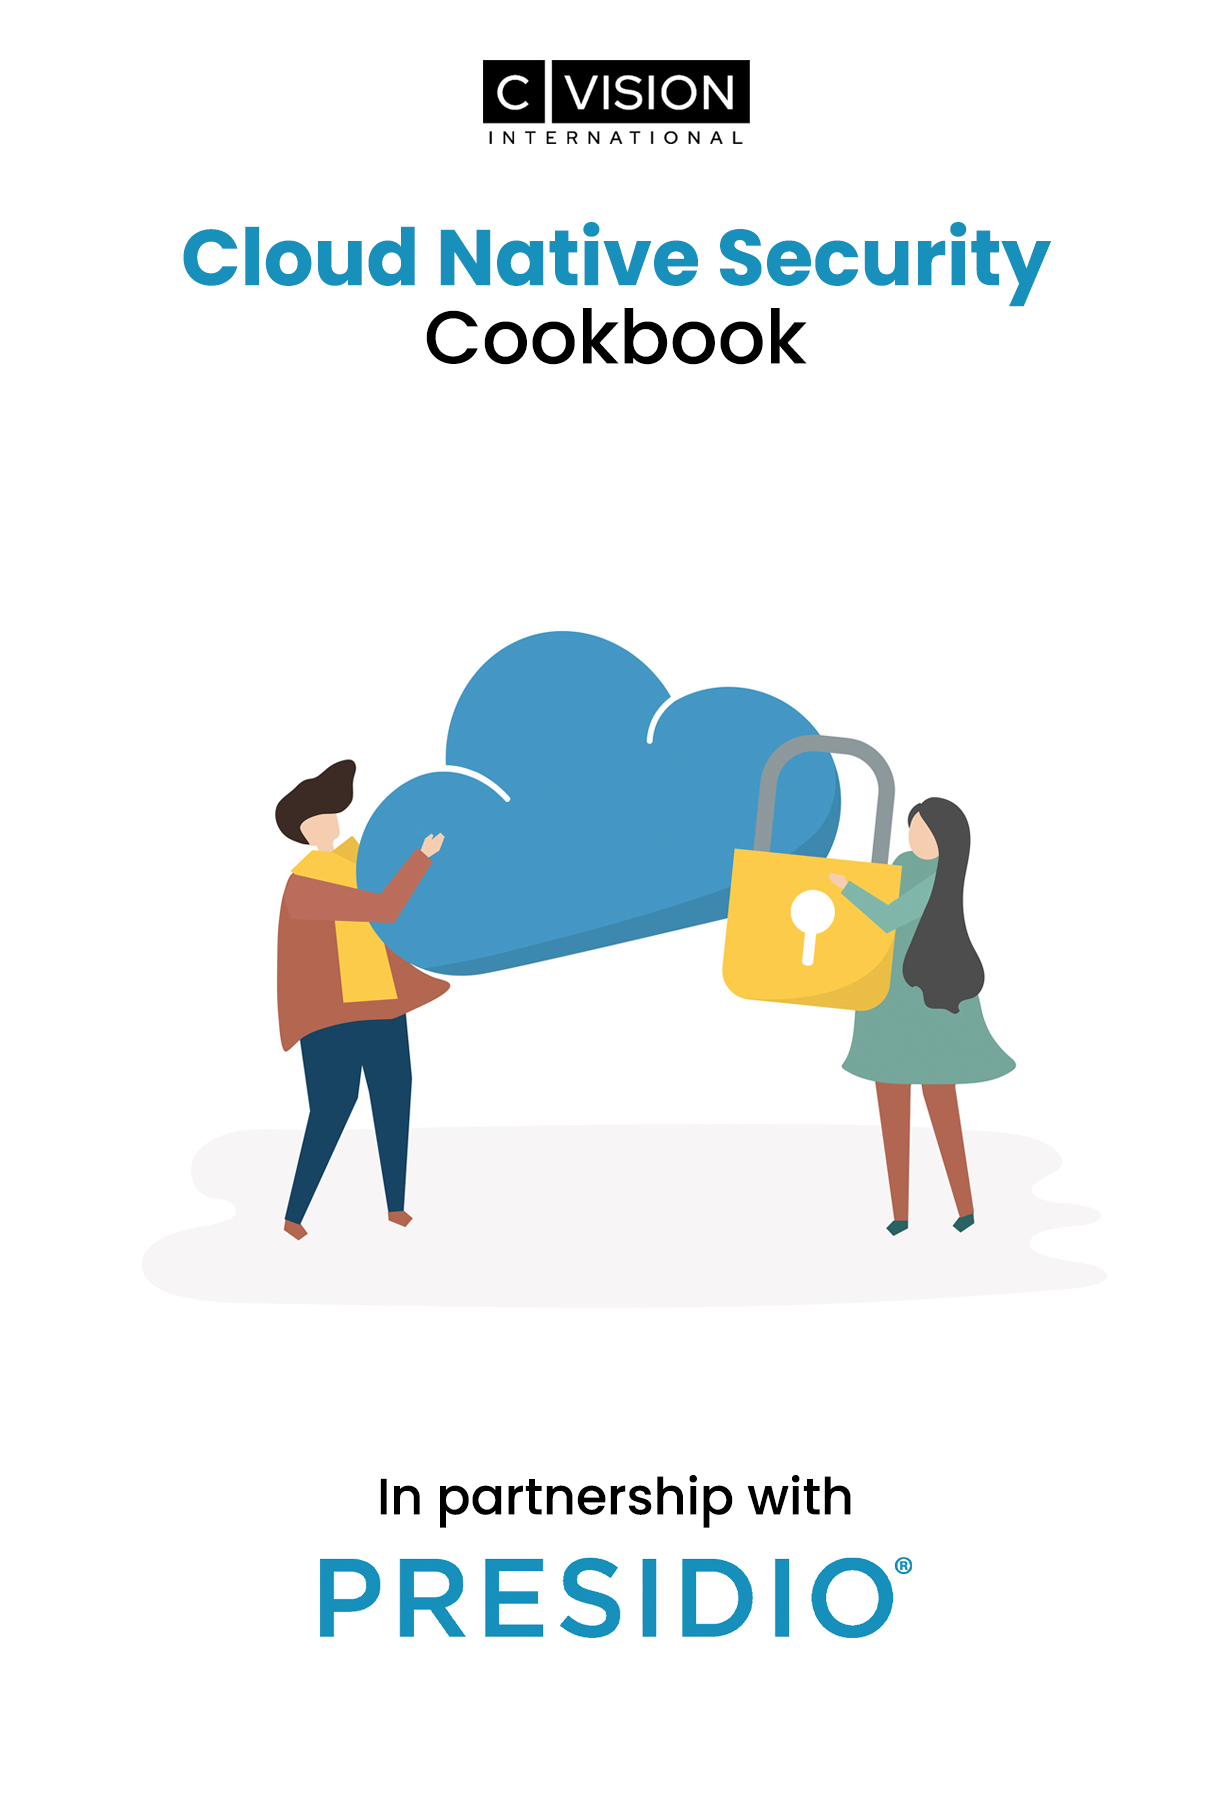 Cloud Native Security Cookbook